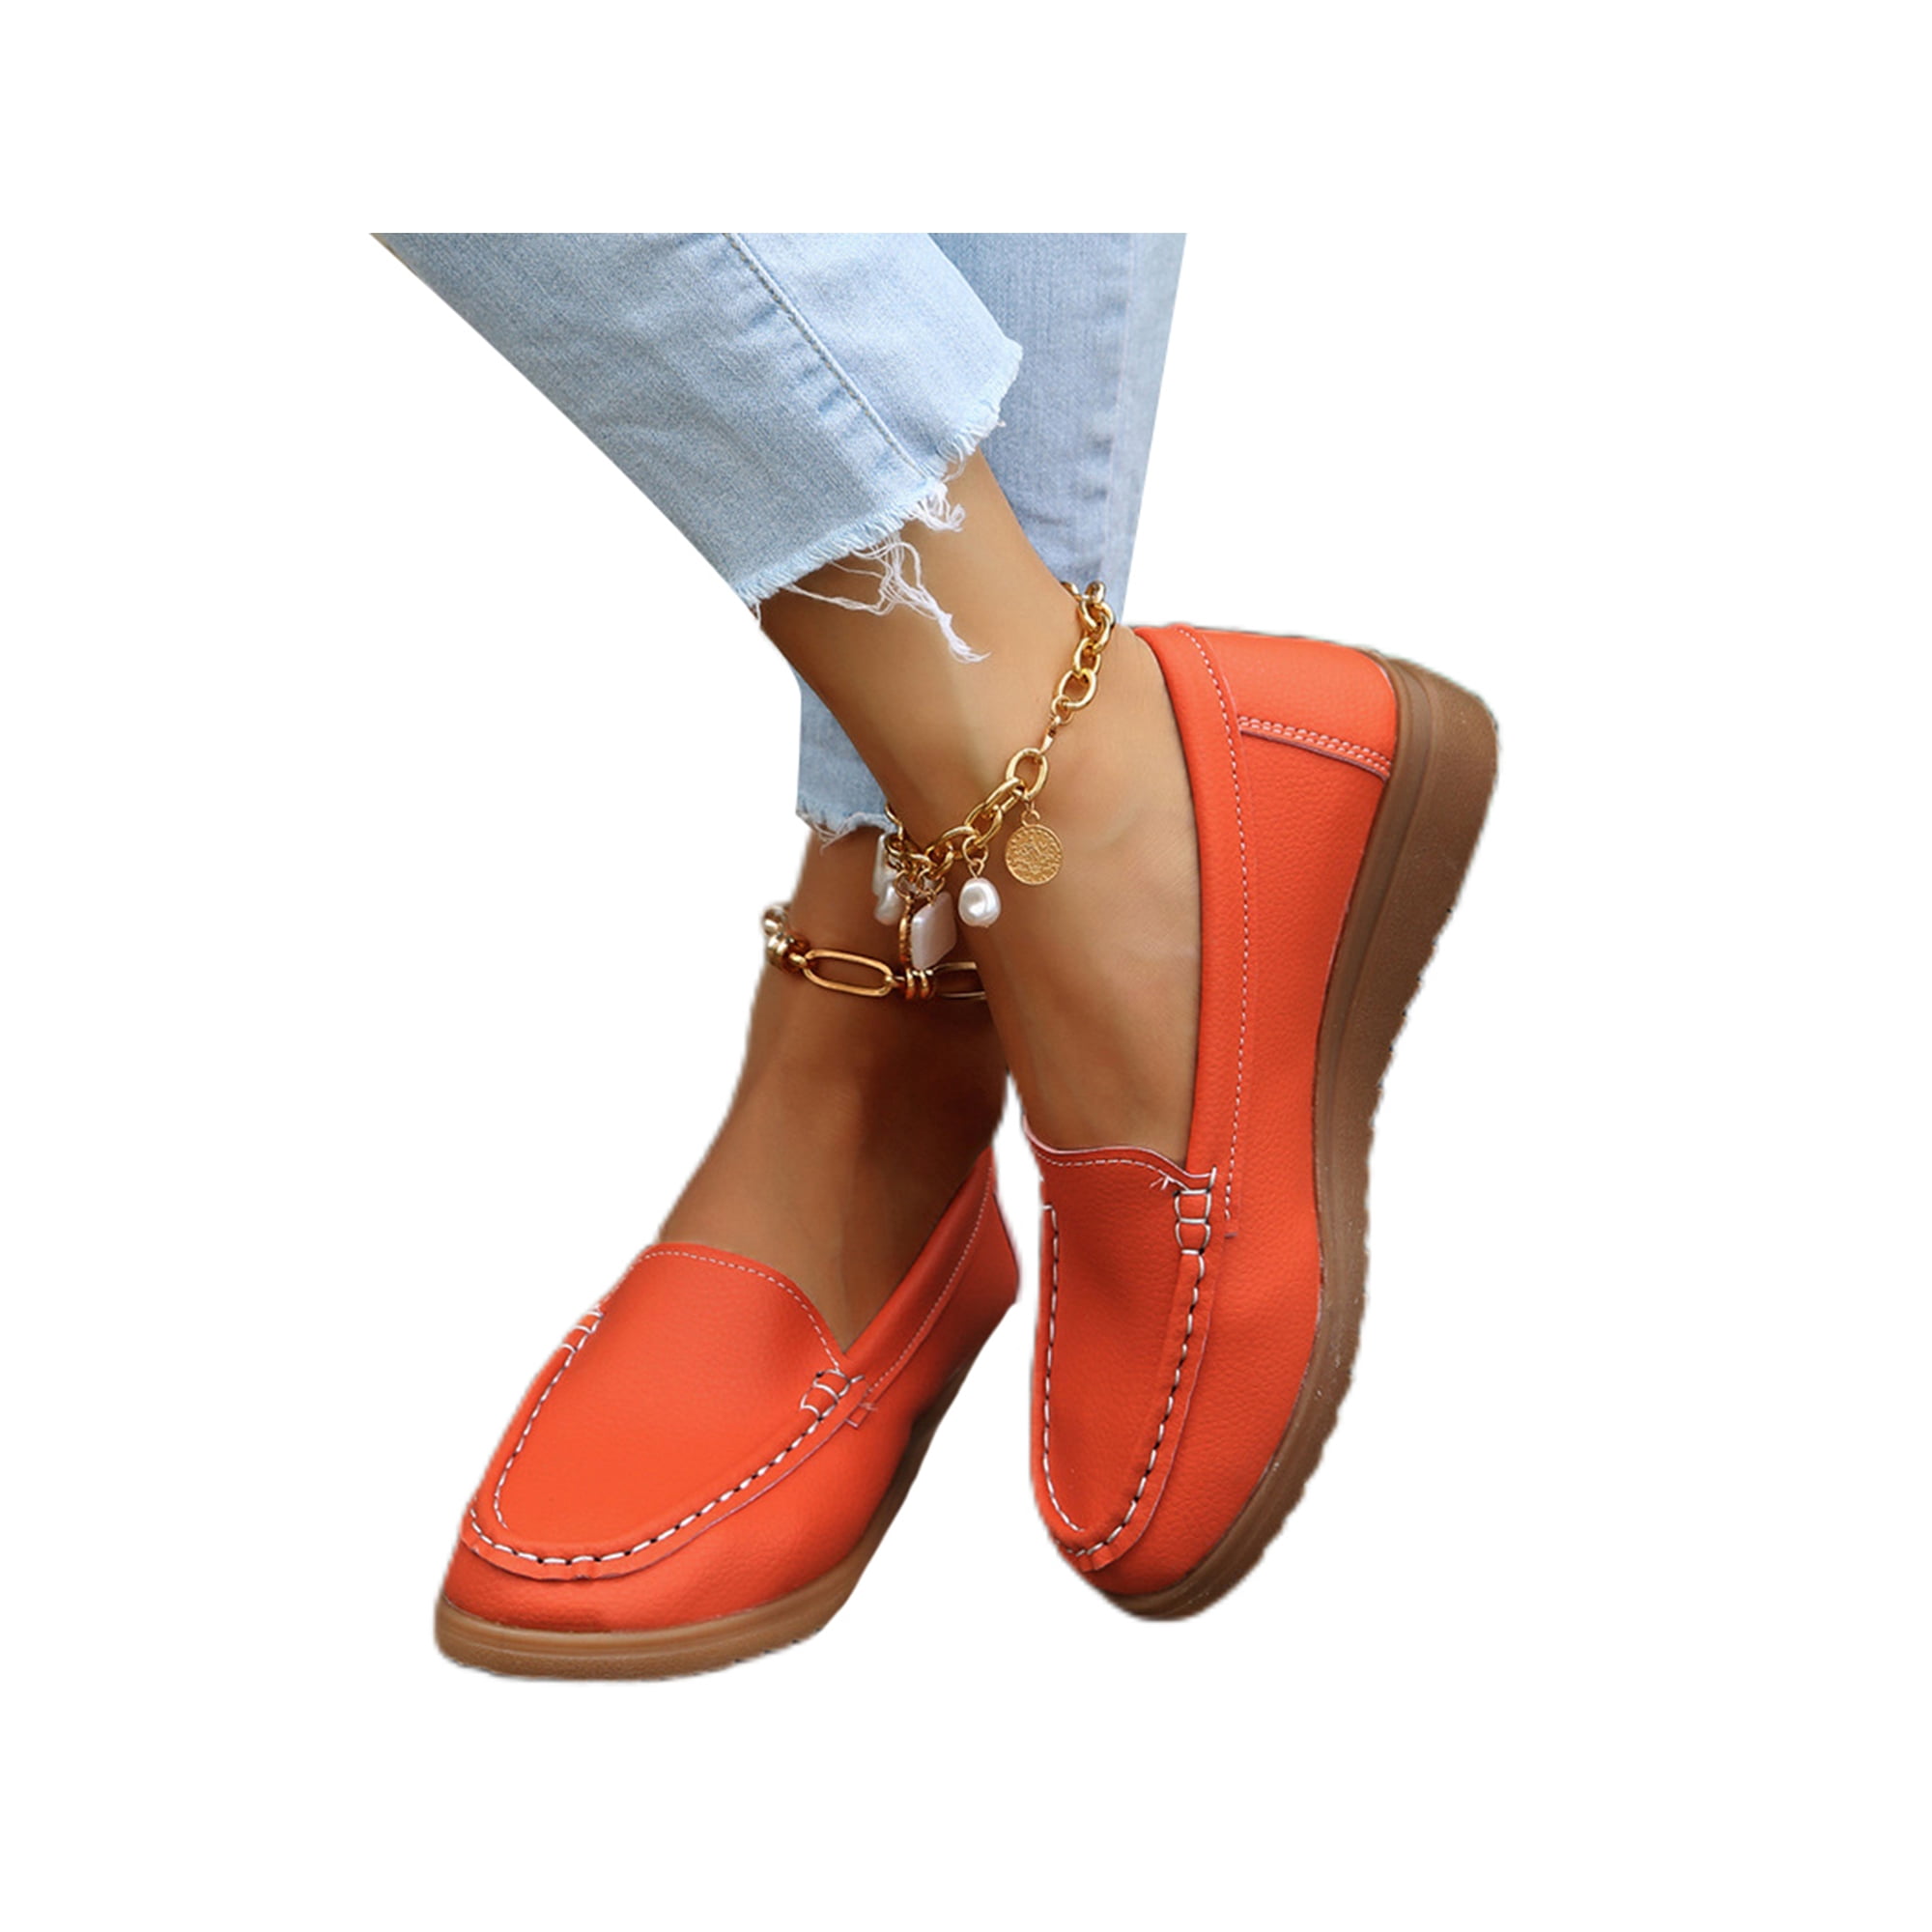 Woobling Women's Penny Loafers Comfy Slip on Boat Shoe Flat Walking Work Shoes 4.5-8.5 Orange 5 Walmart.com